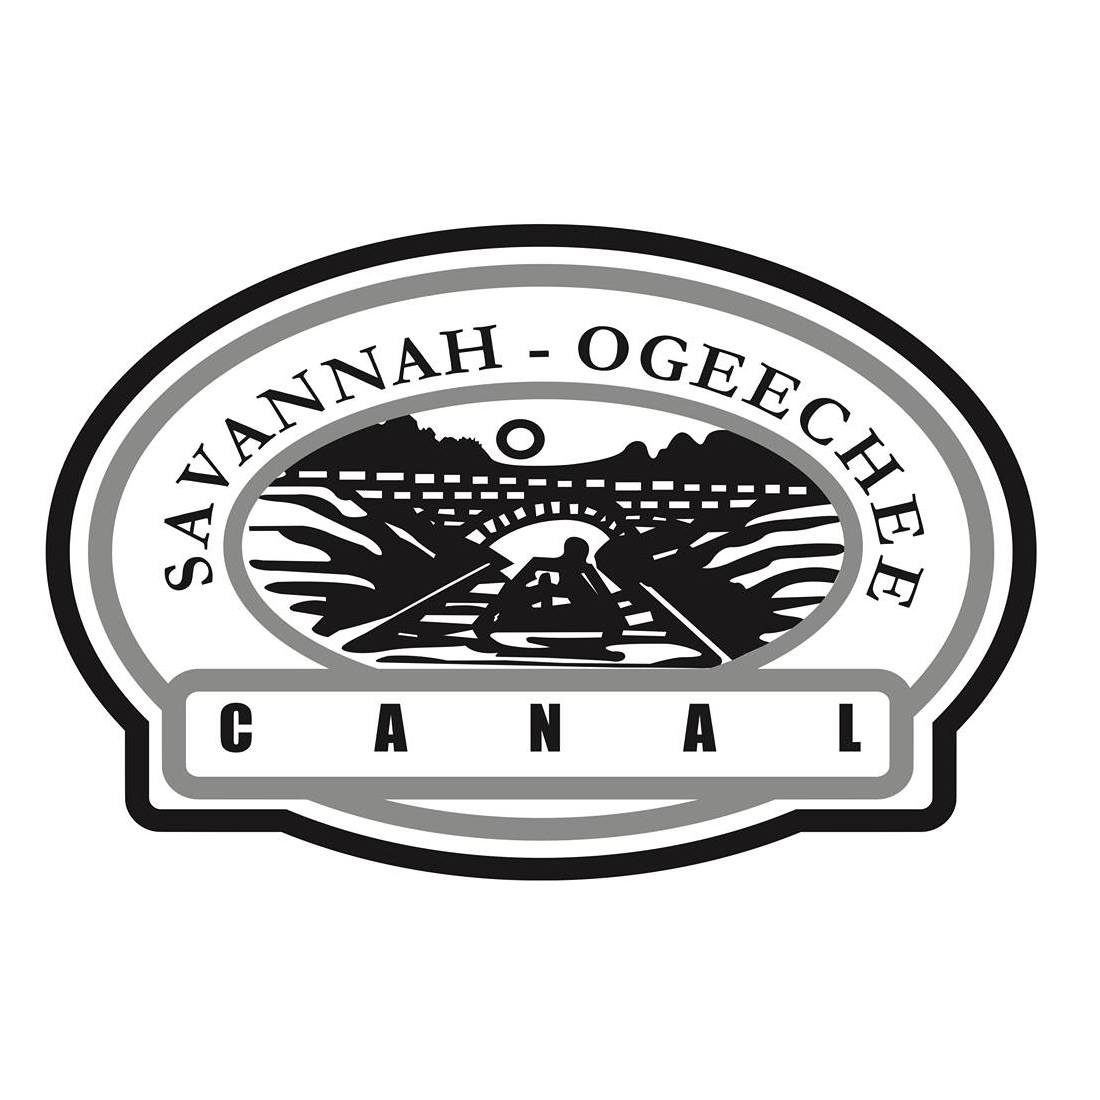 Savannah-Ogeechee Canal Museum & Nature Center Logo